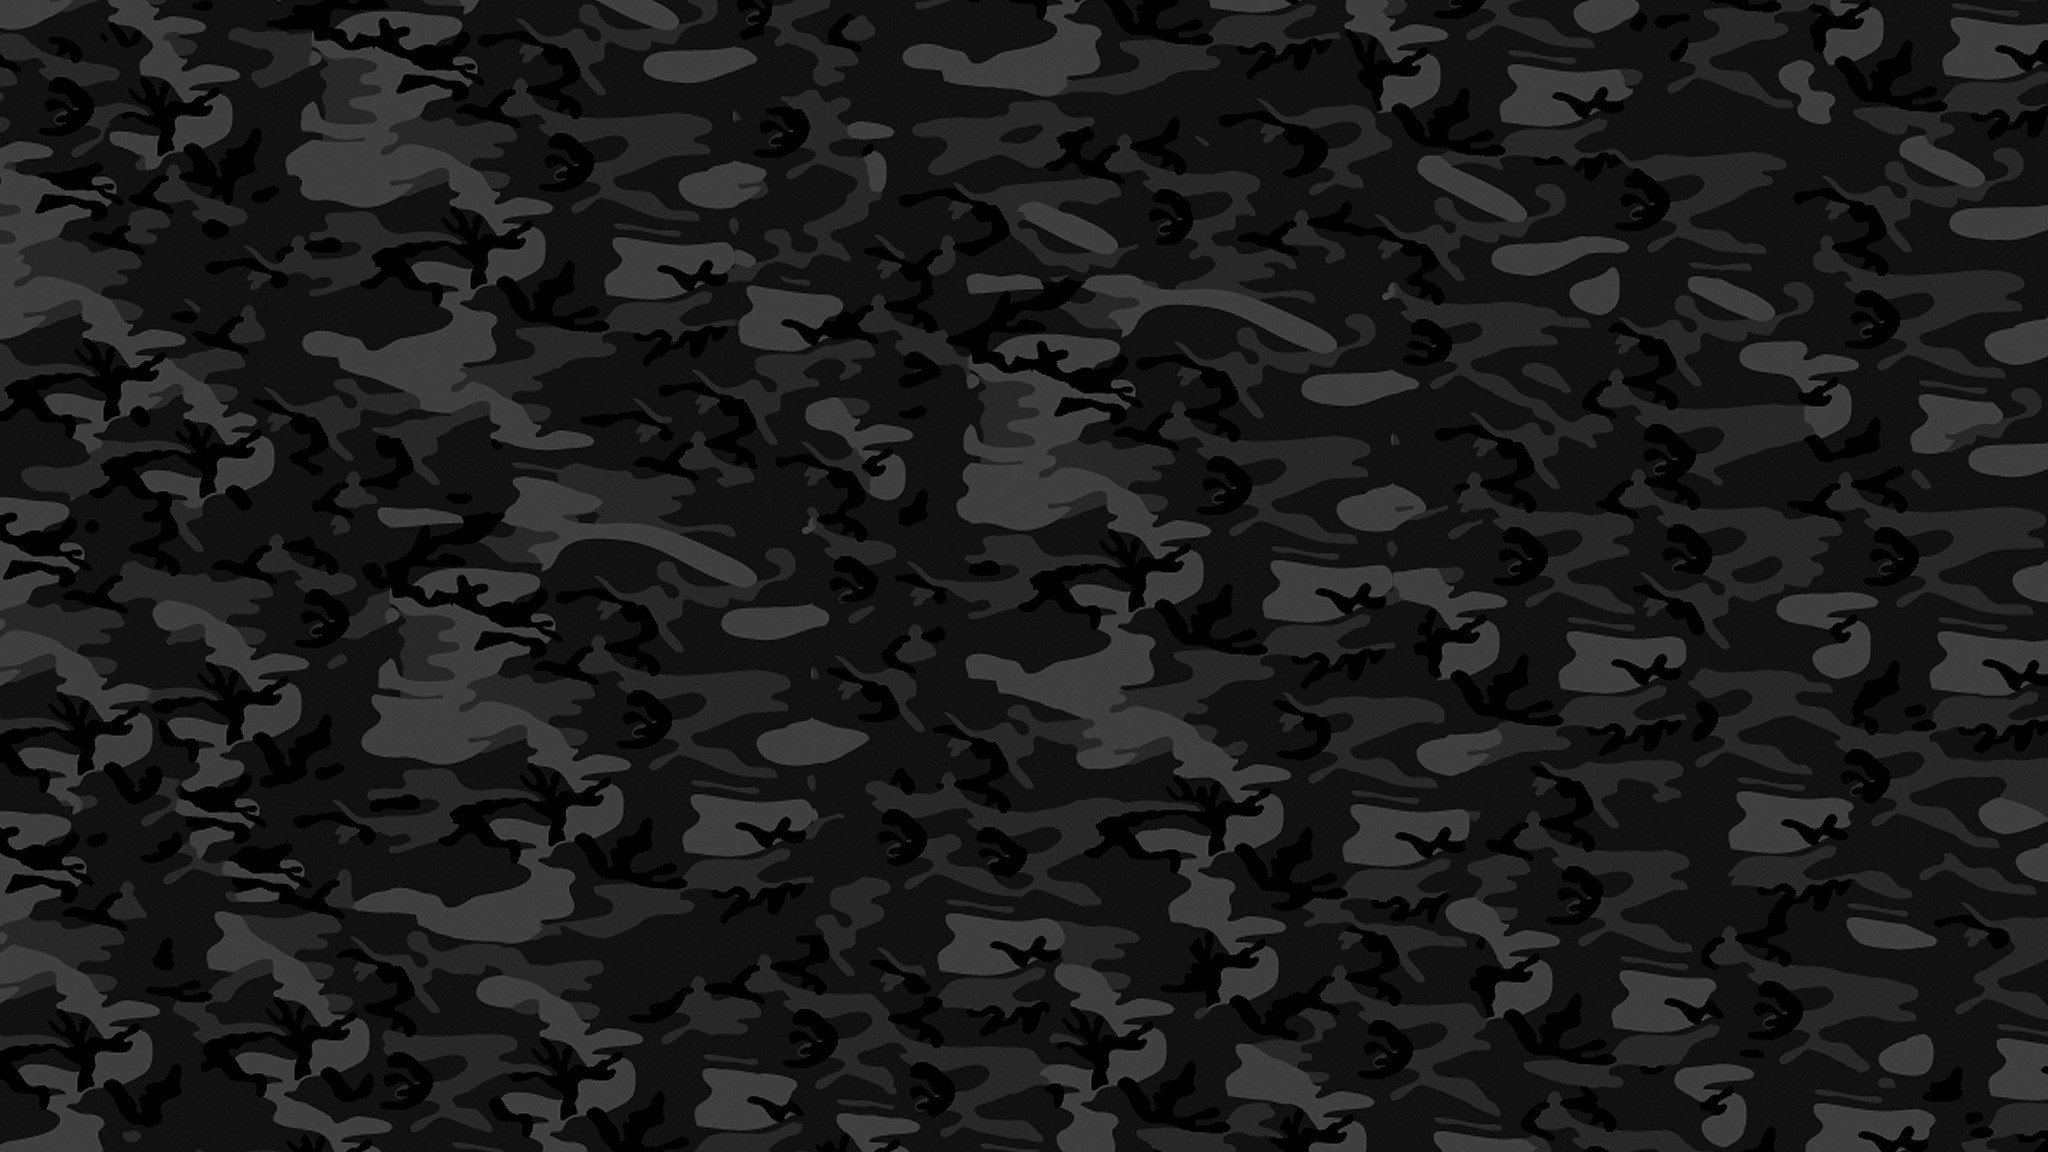 Армейский серый. Лесной камуфляж 3301x4800px. T&G tg191 камуфляж. Ткань Black Camo Urban. Black w Camo камуфляж.